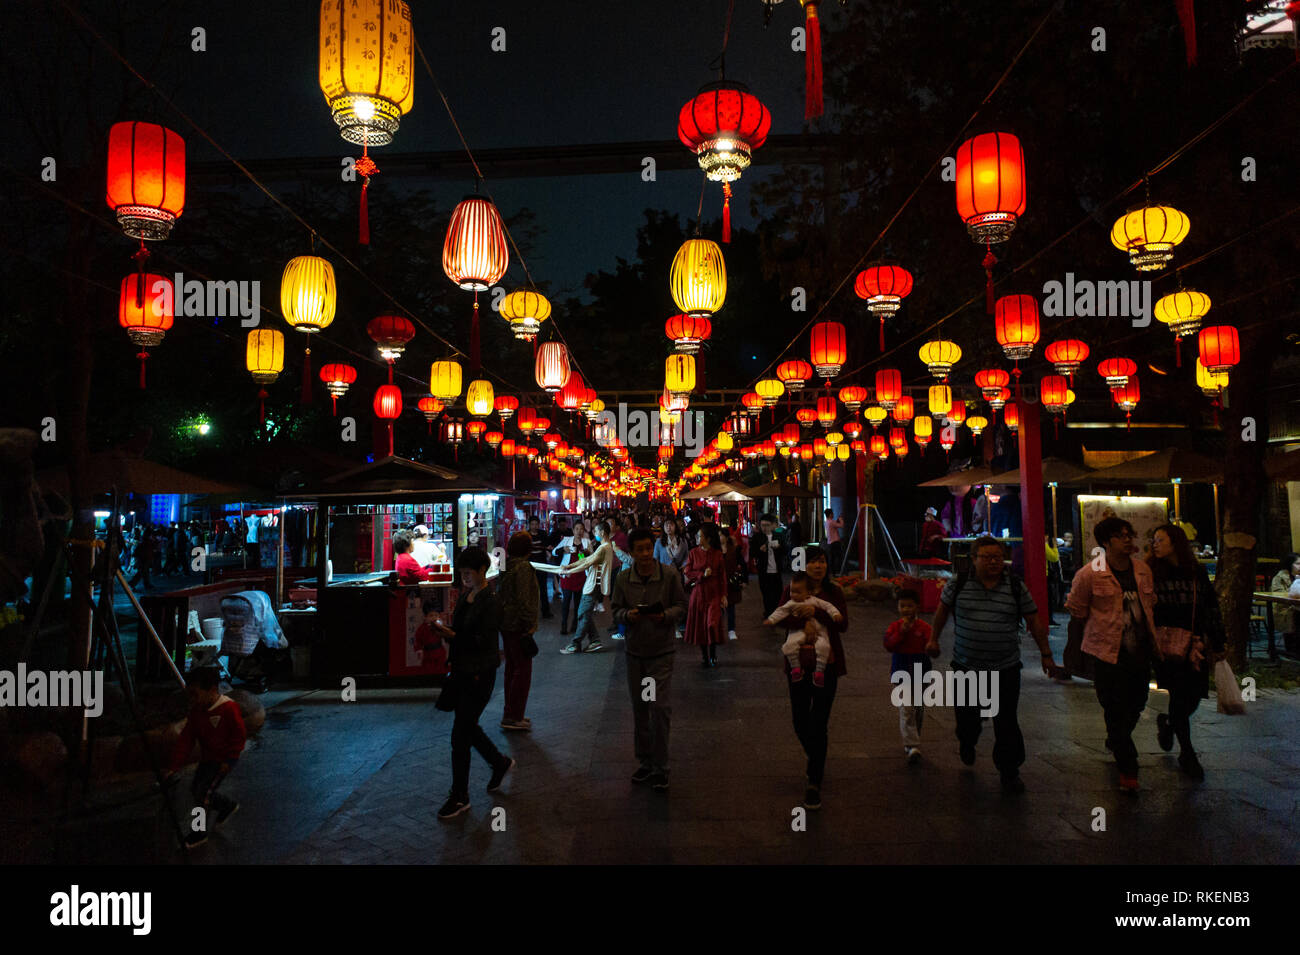 Lanternes chinoises pendant la nuit, avec des gens dans l'ombre, à Lantern Festival célébré avec lanterne colorée affichages et décorations à la Chine Splendide, un parc à thème de la culture chinoise à Shenzhen, Chine. Banque D'Images